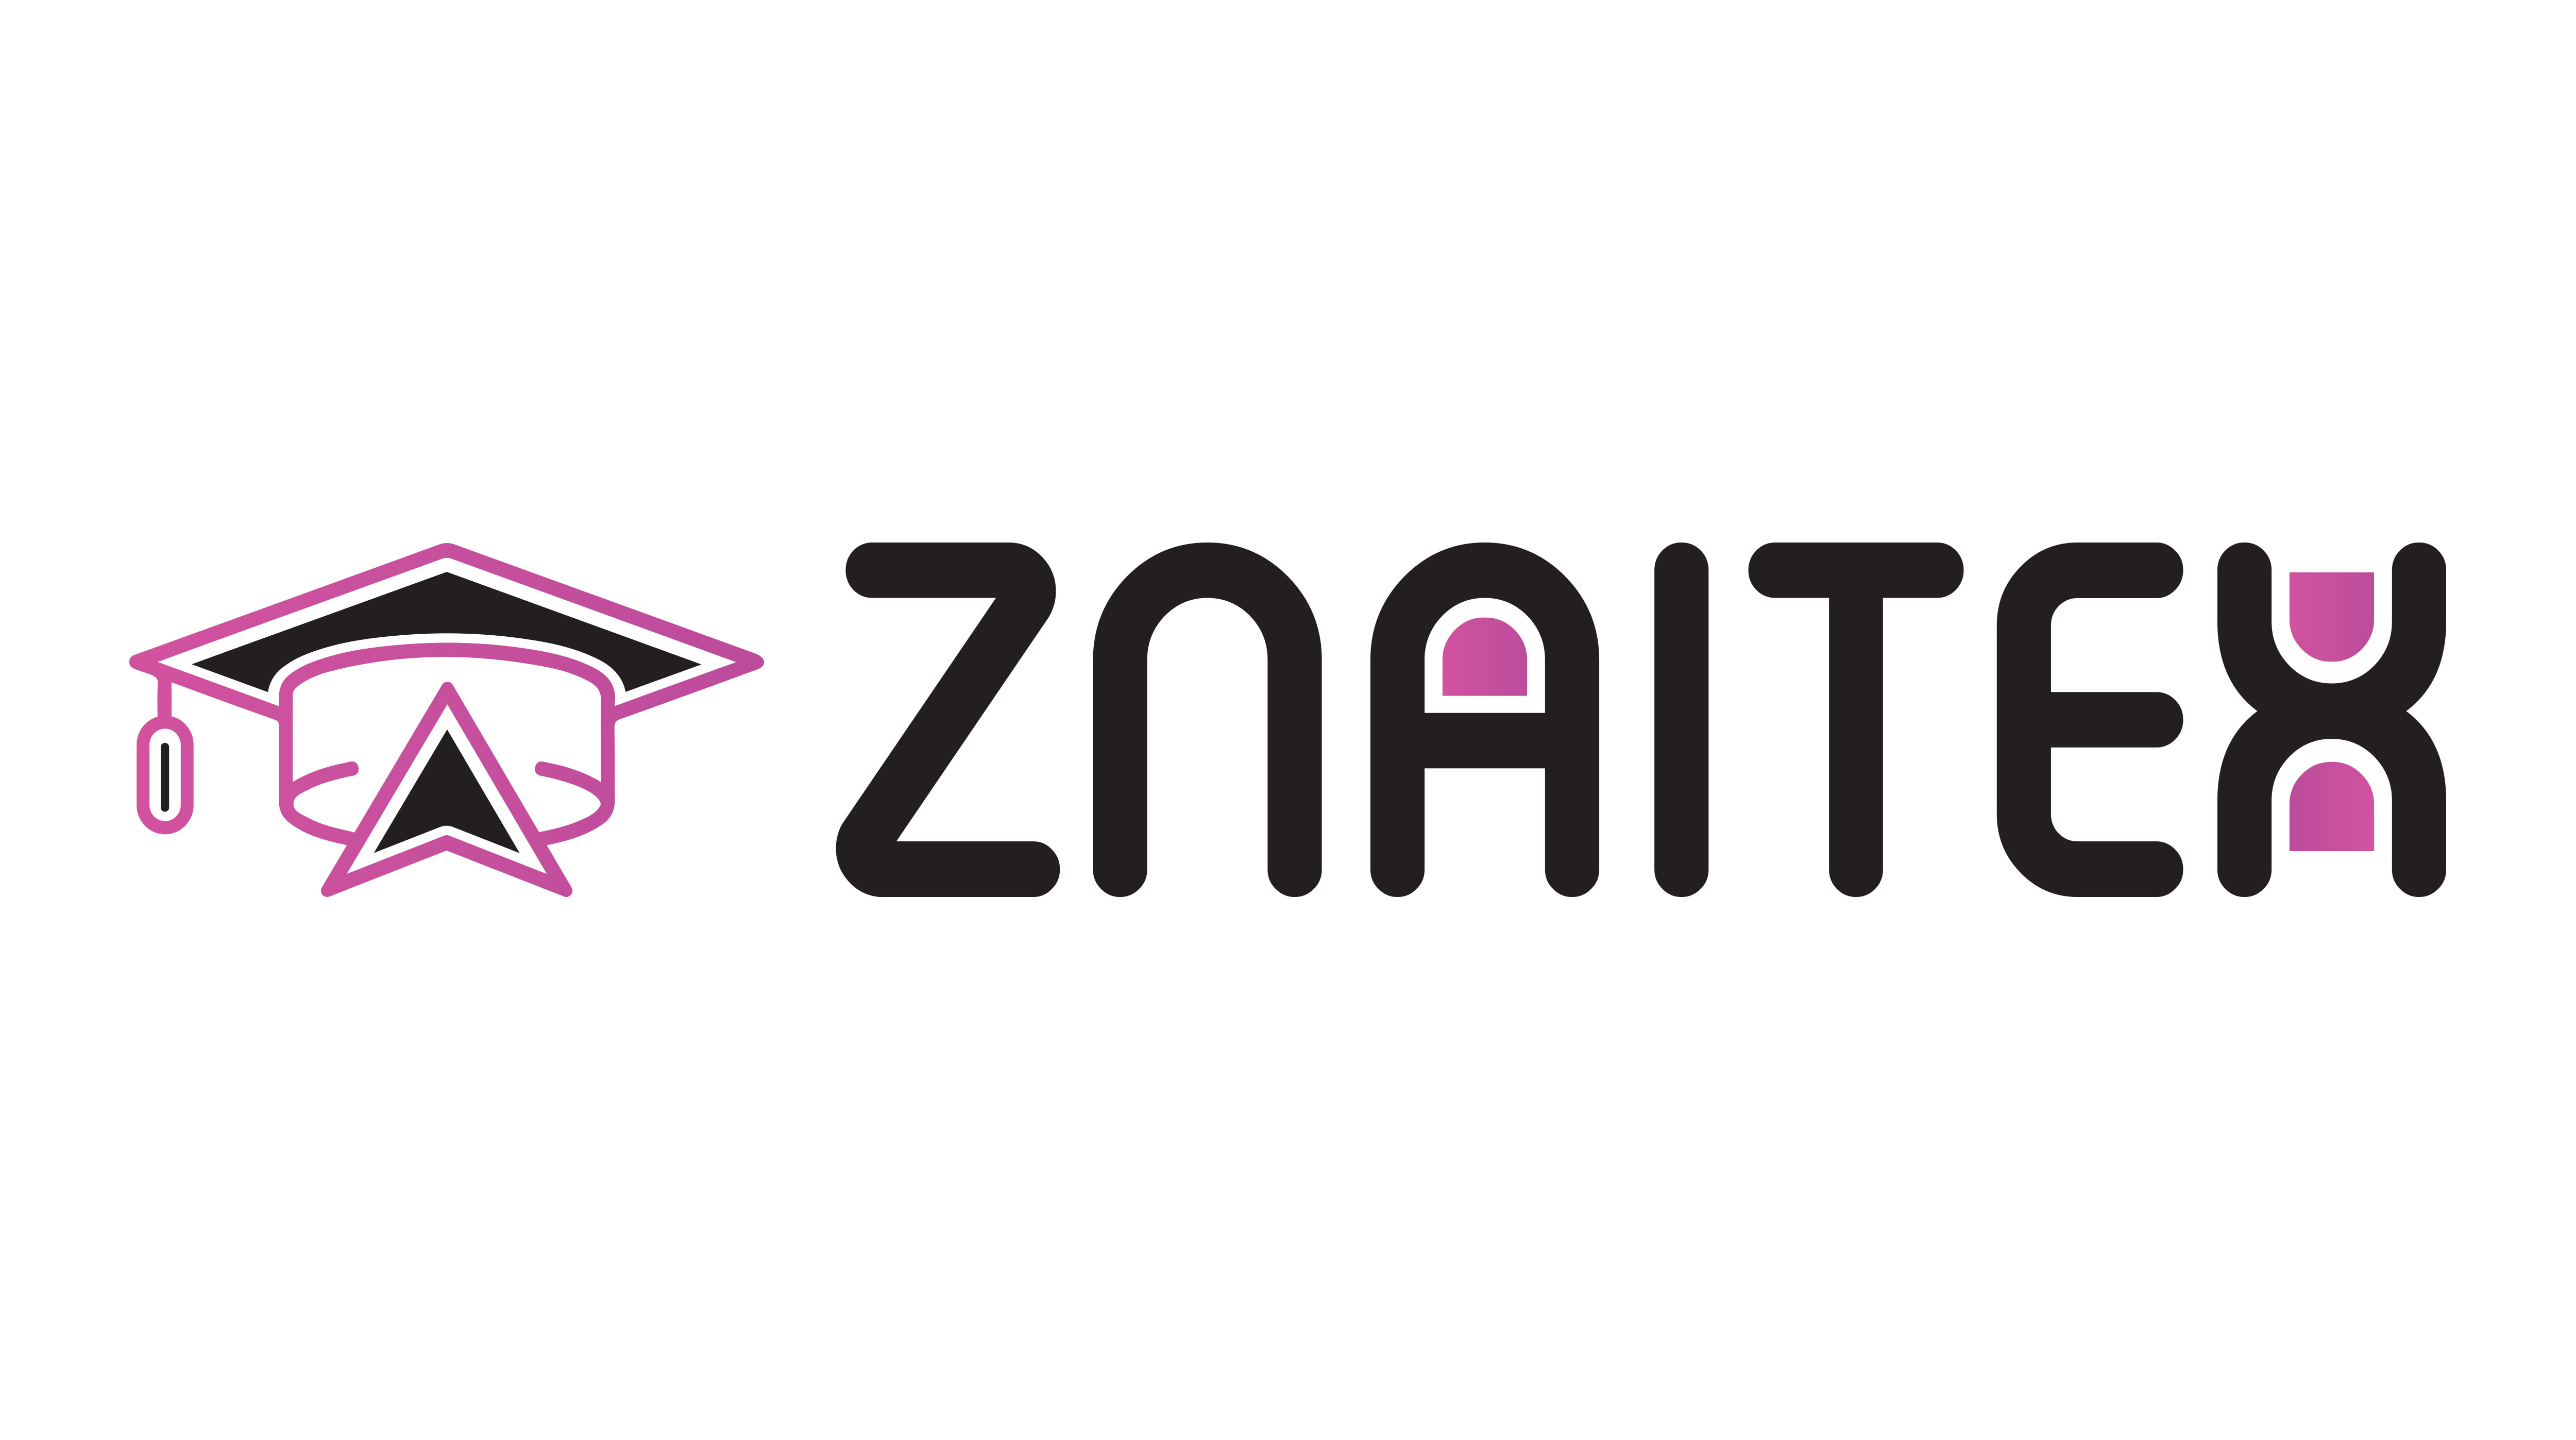 Знайтекс – агрегатор онлайн-курсов: подробная информация об обучении, оценки, цены и реальные отзывы